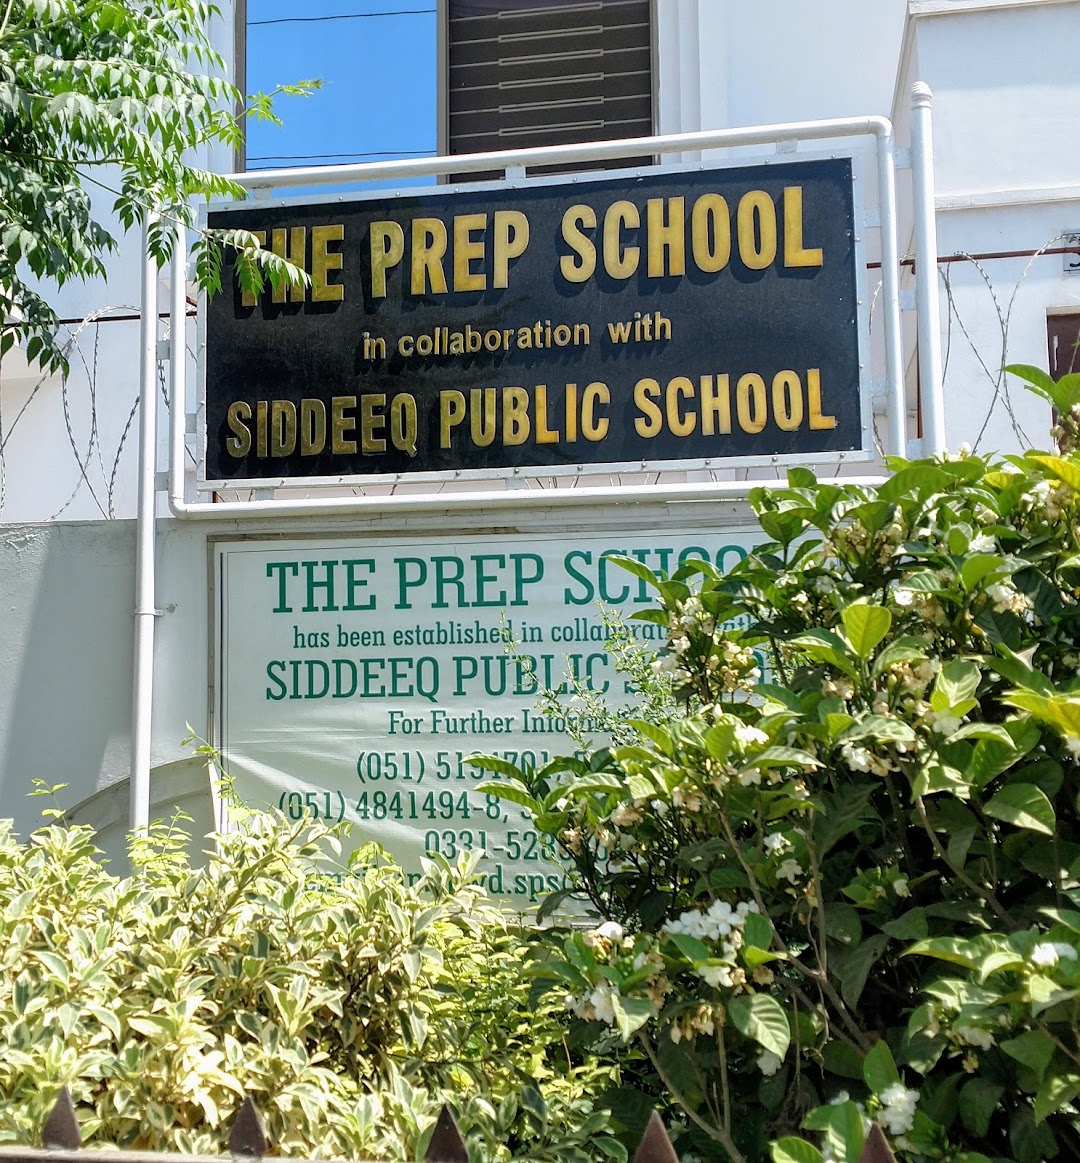 THE PREP SCHOOL